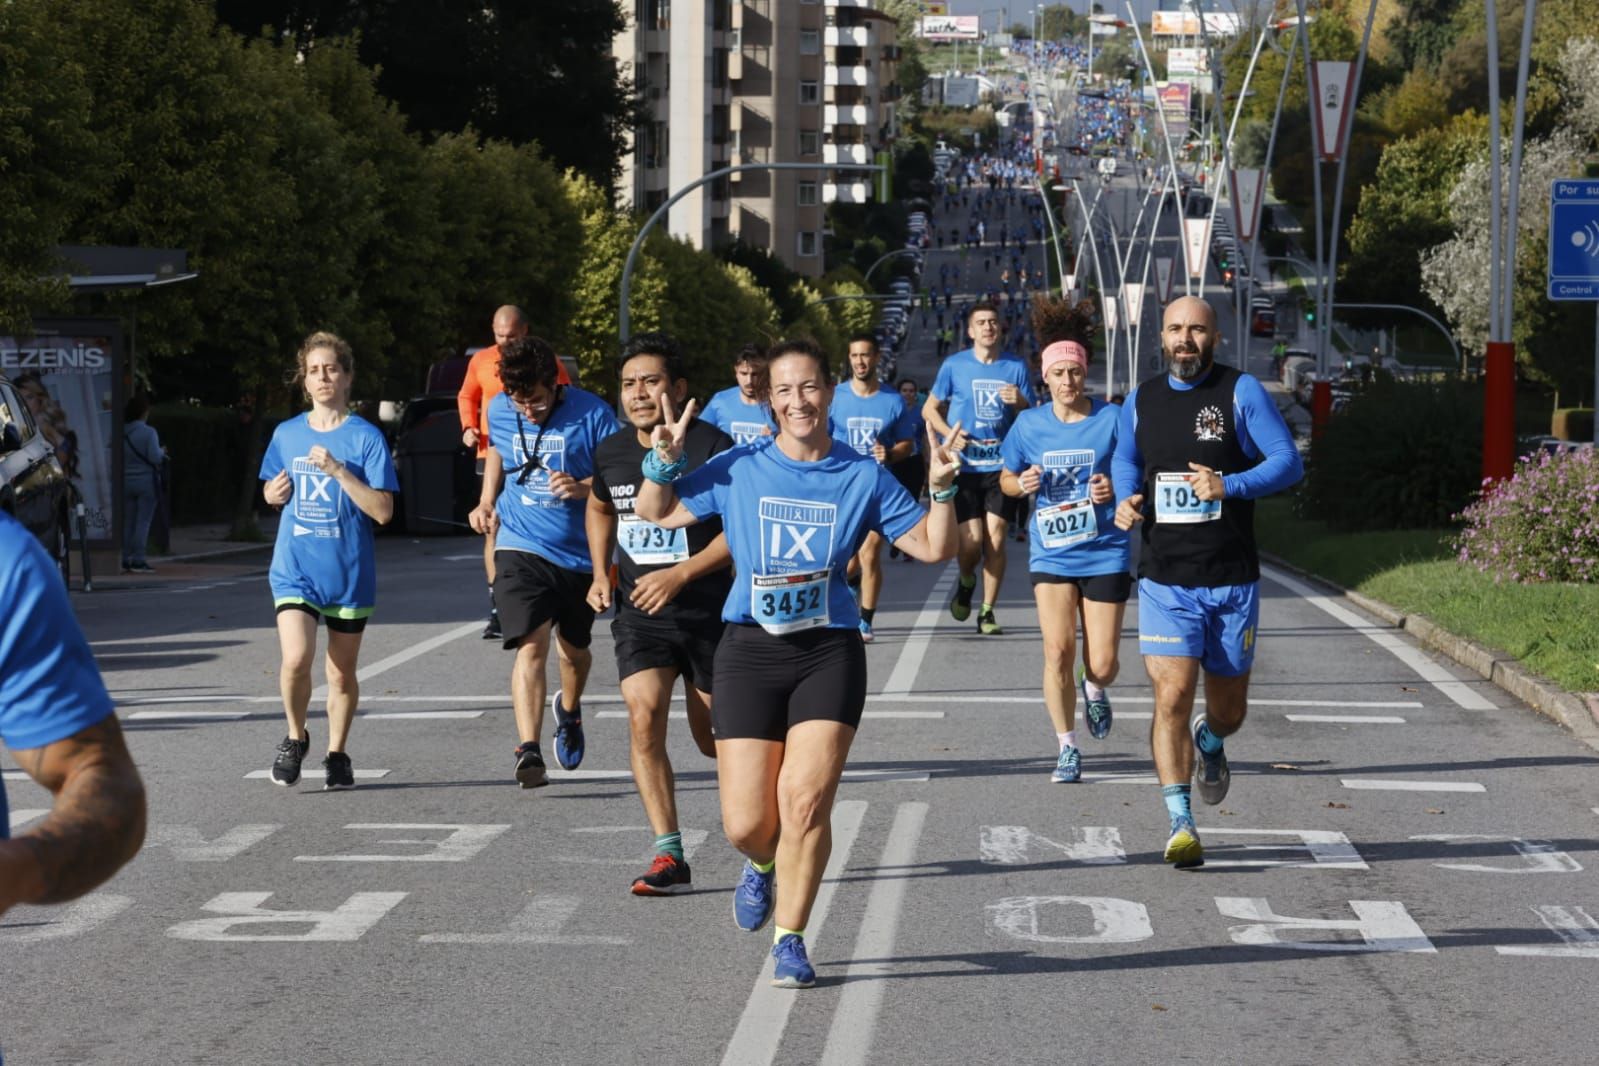 Más de 4.000 personas desafían al tiempo y corren contra el cáncer en Vigo